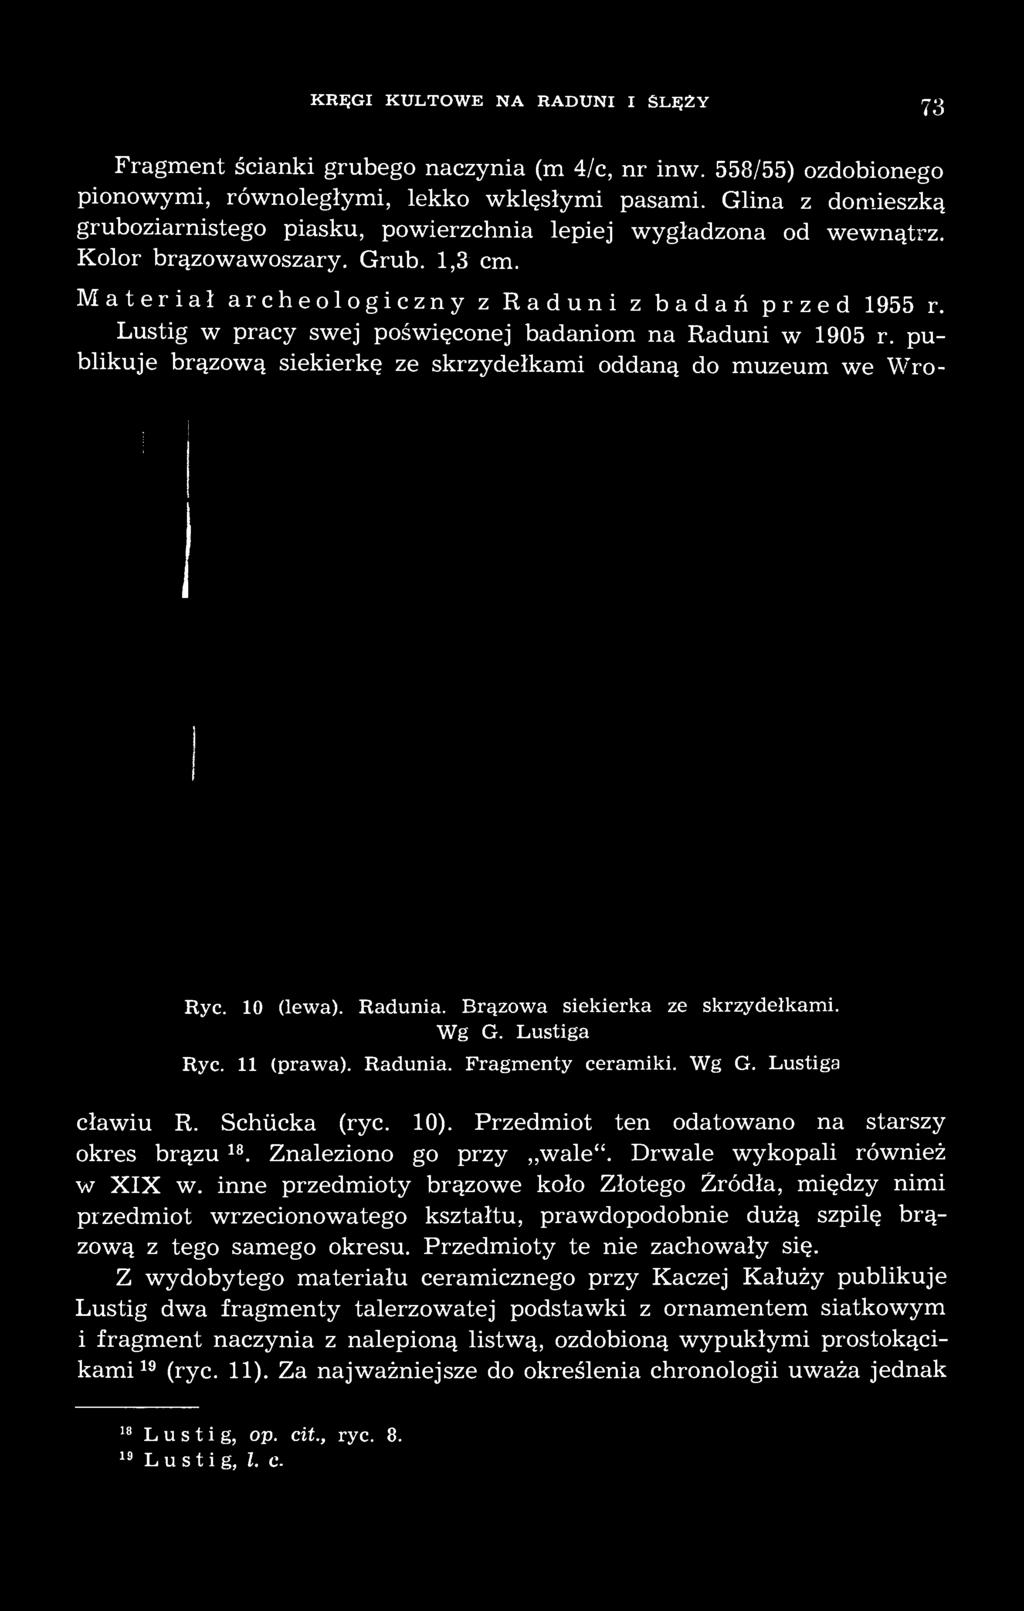 Lustig w pracy swej poświęconej badaniom na Raduni w 1905 r. publikuje brązową siekierkę ze skrzydełkami oddaną do muzeum we Wro- Ryc. 10 (lewa). Radunia. Brązowa siekierka ze skrzydełkami. Wg G.